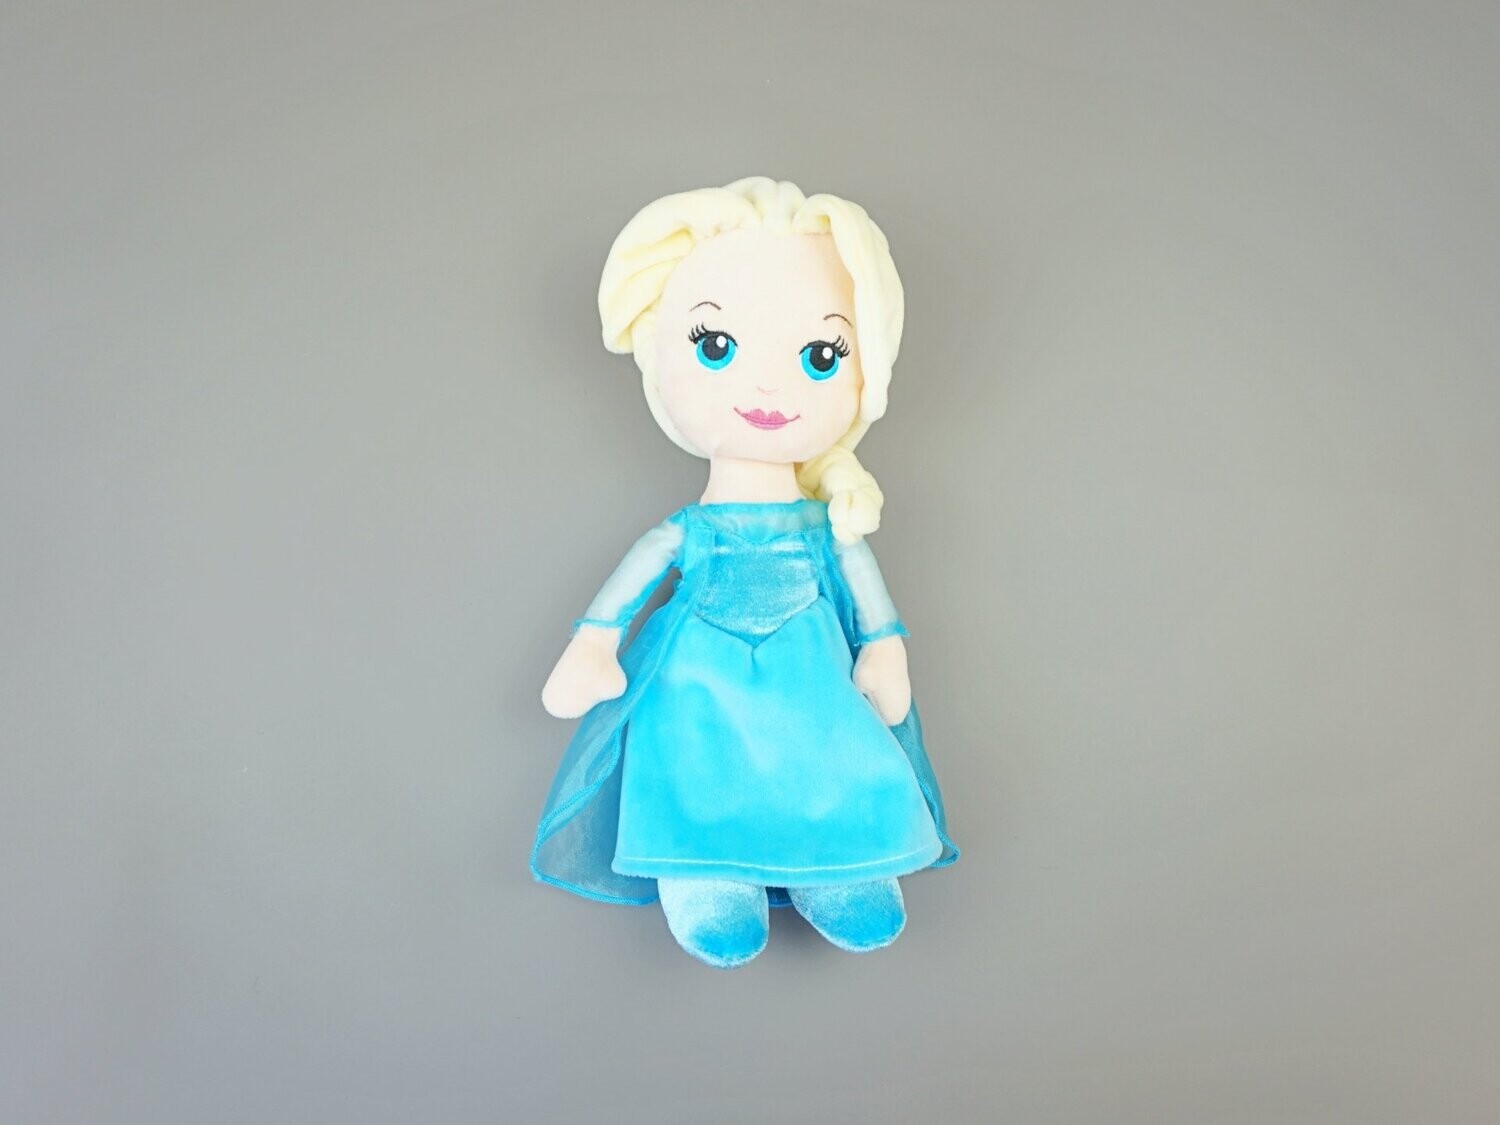 Stoffpuppe "Elsa", Die Eiskönigin/Frozen